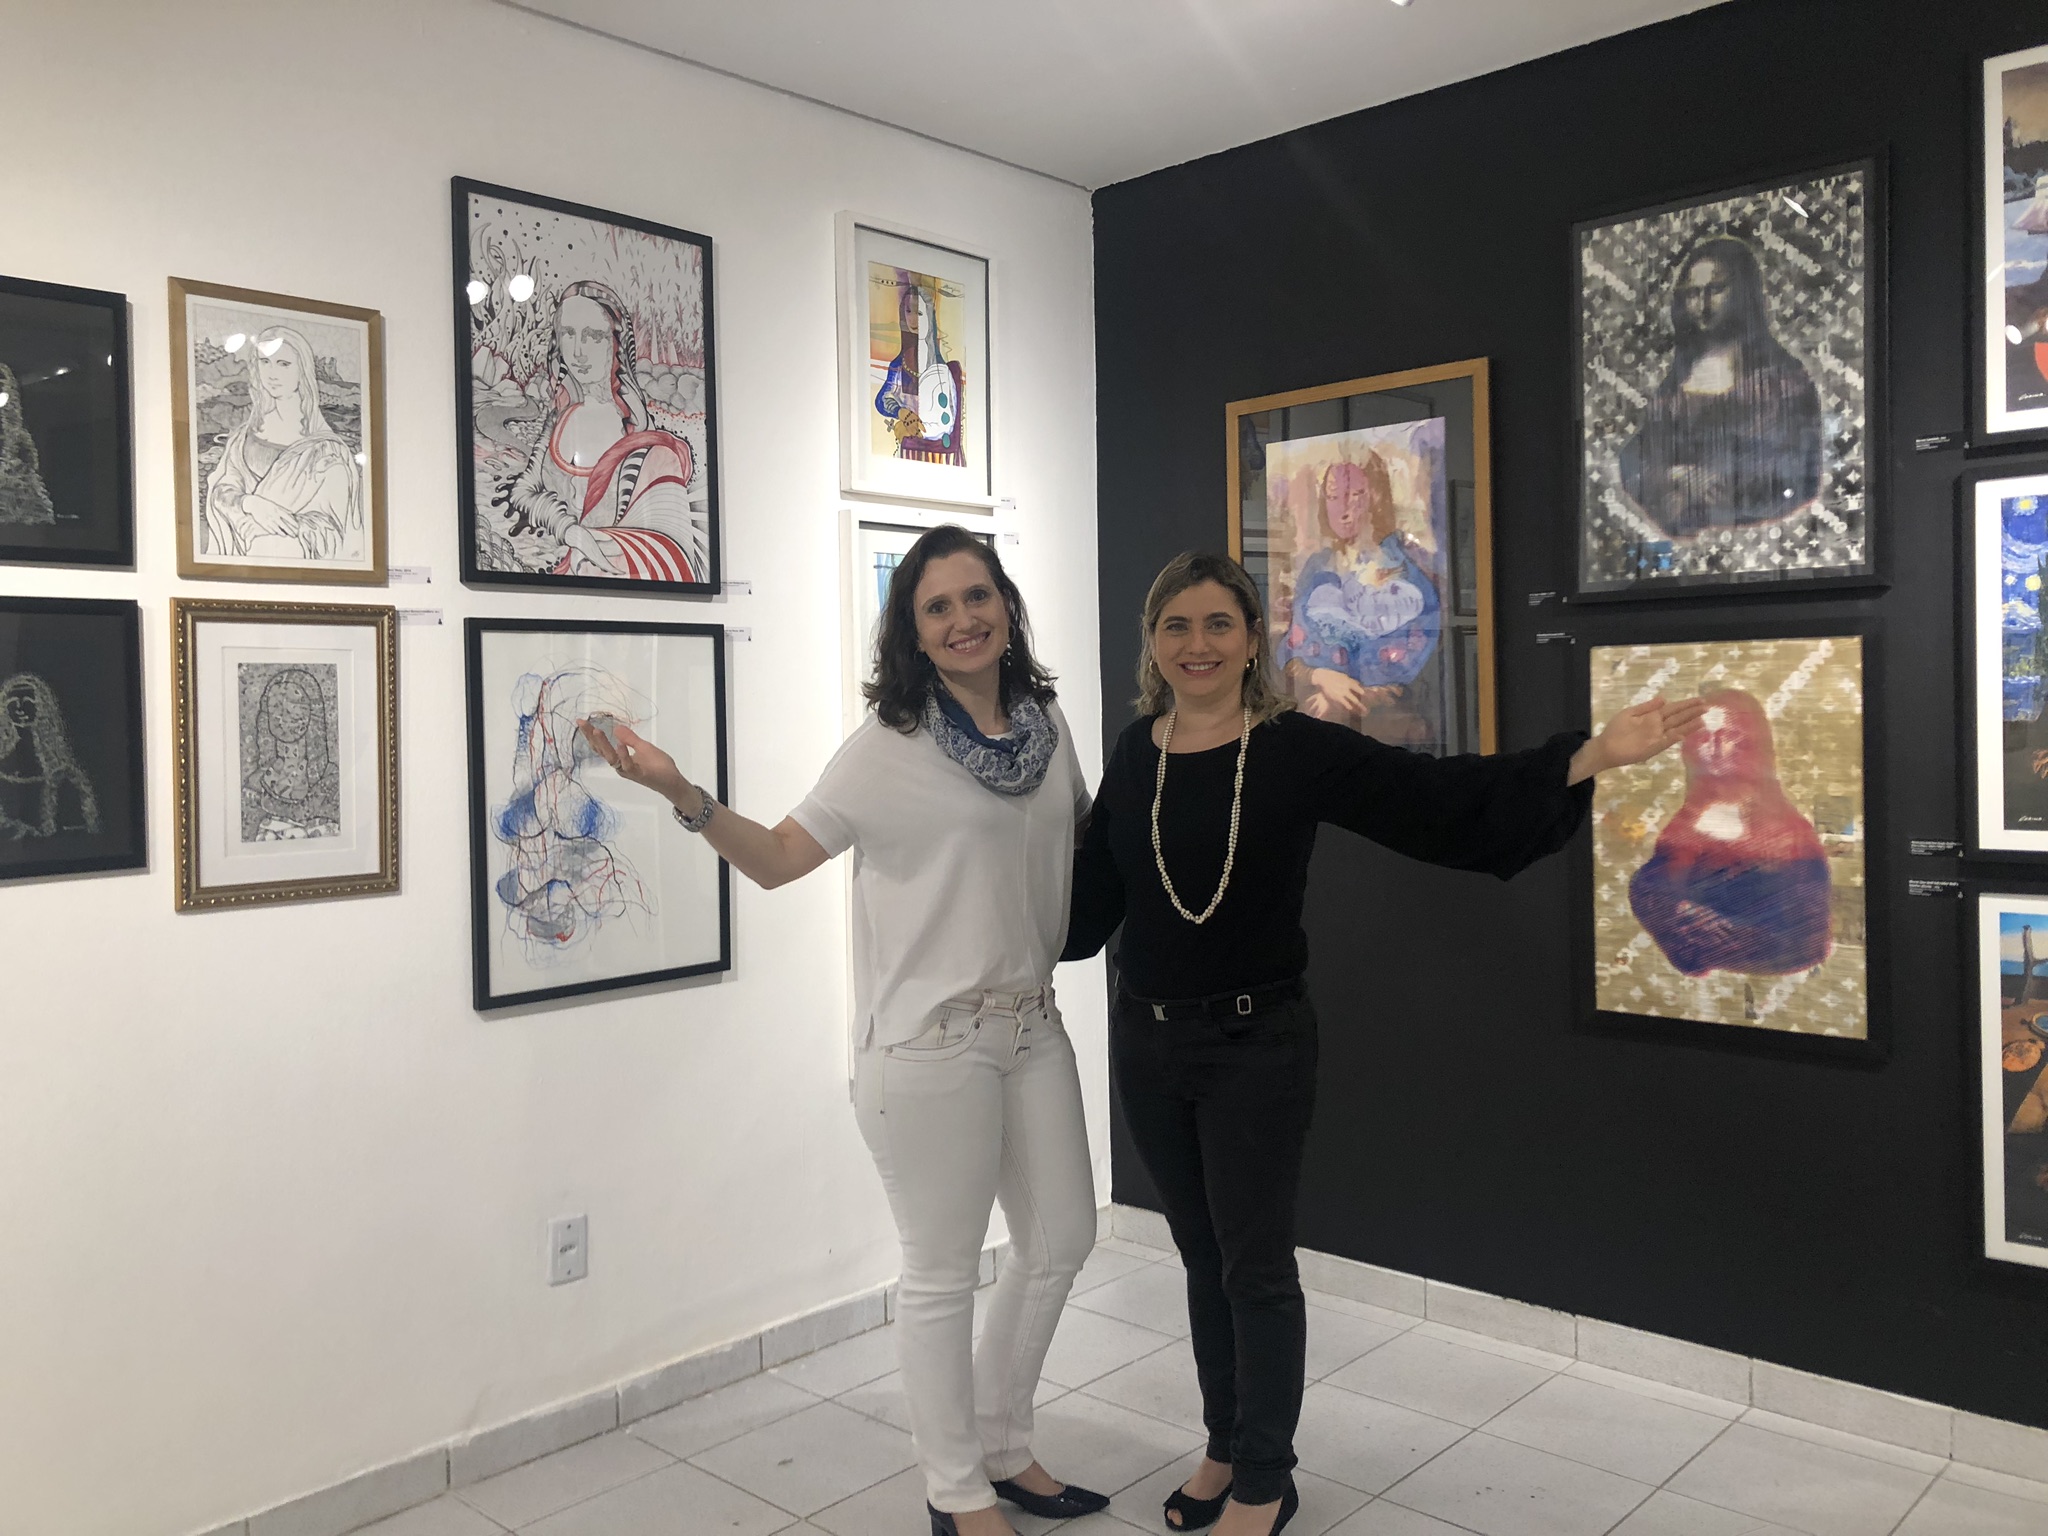 Veridiana Brasileiro e Andréa Dall’Olio lançam livro e nova edição da exposição “Novos Olhares para Monalisa”